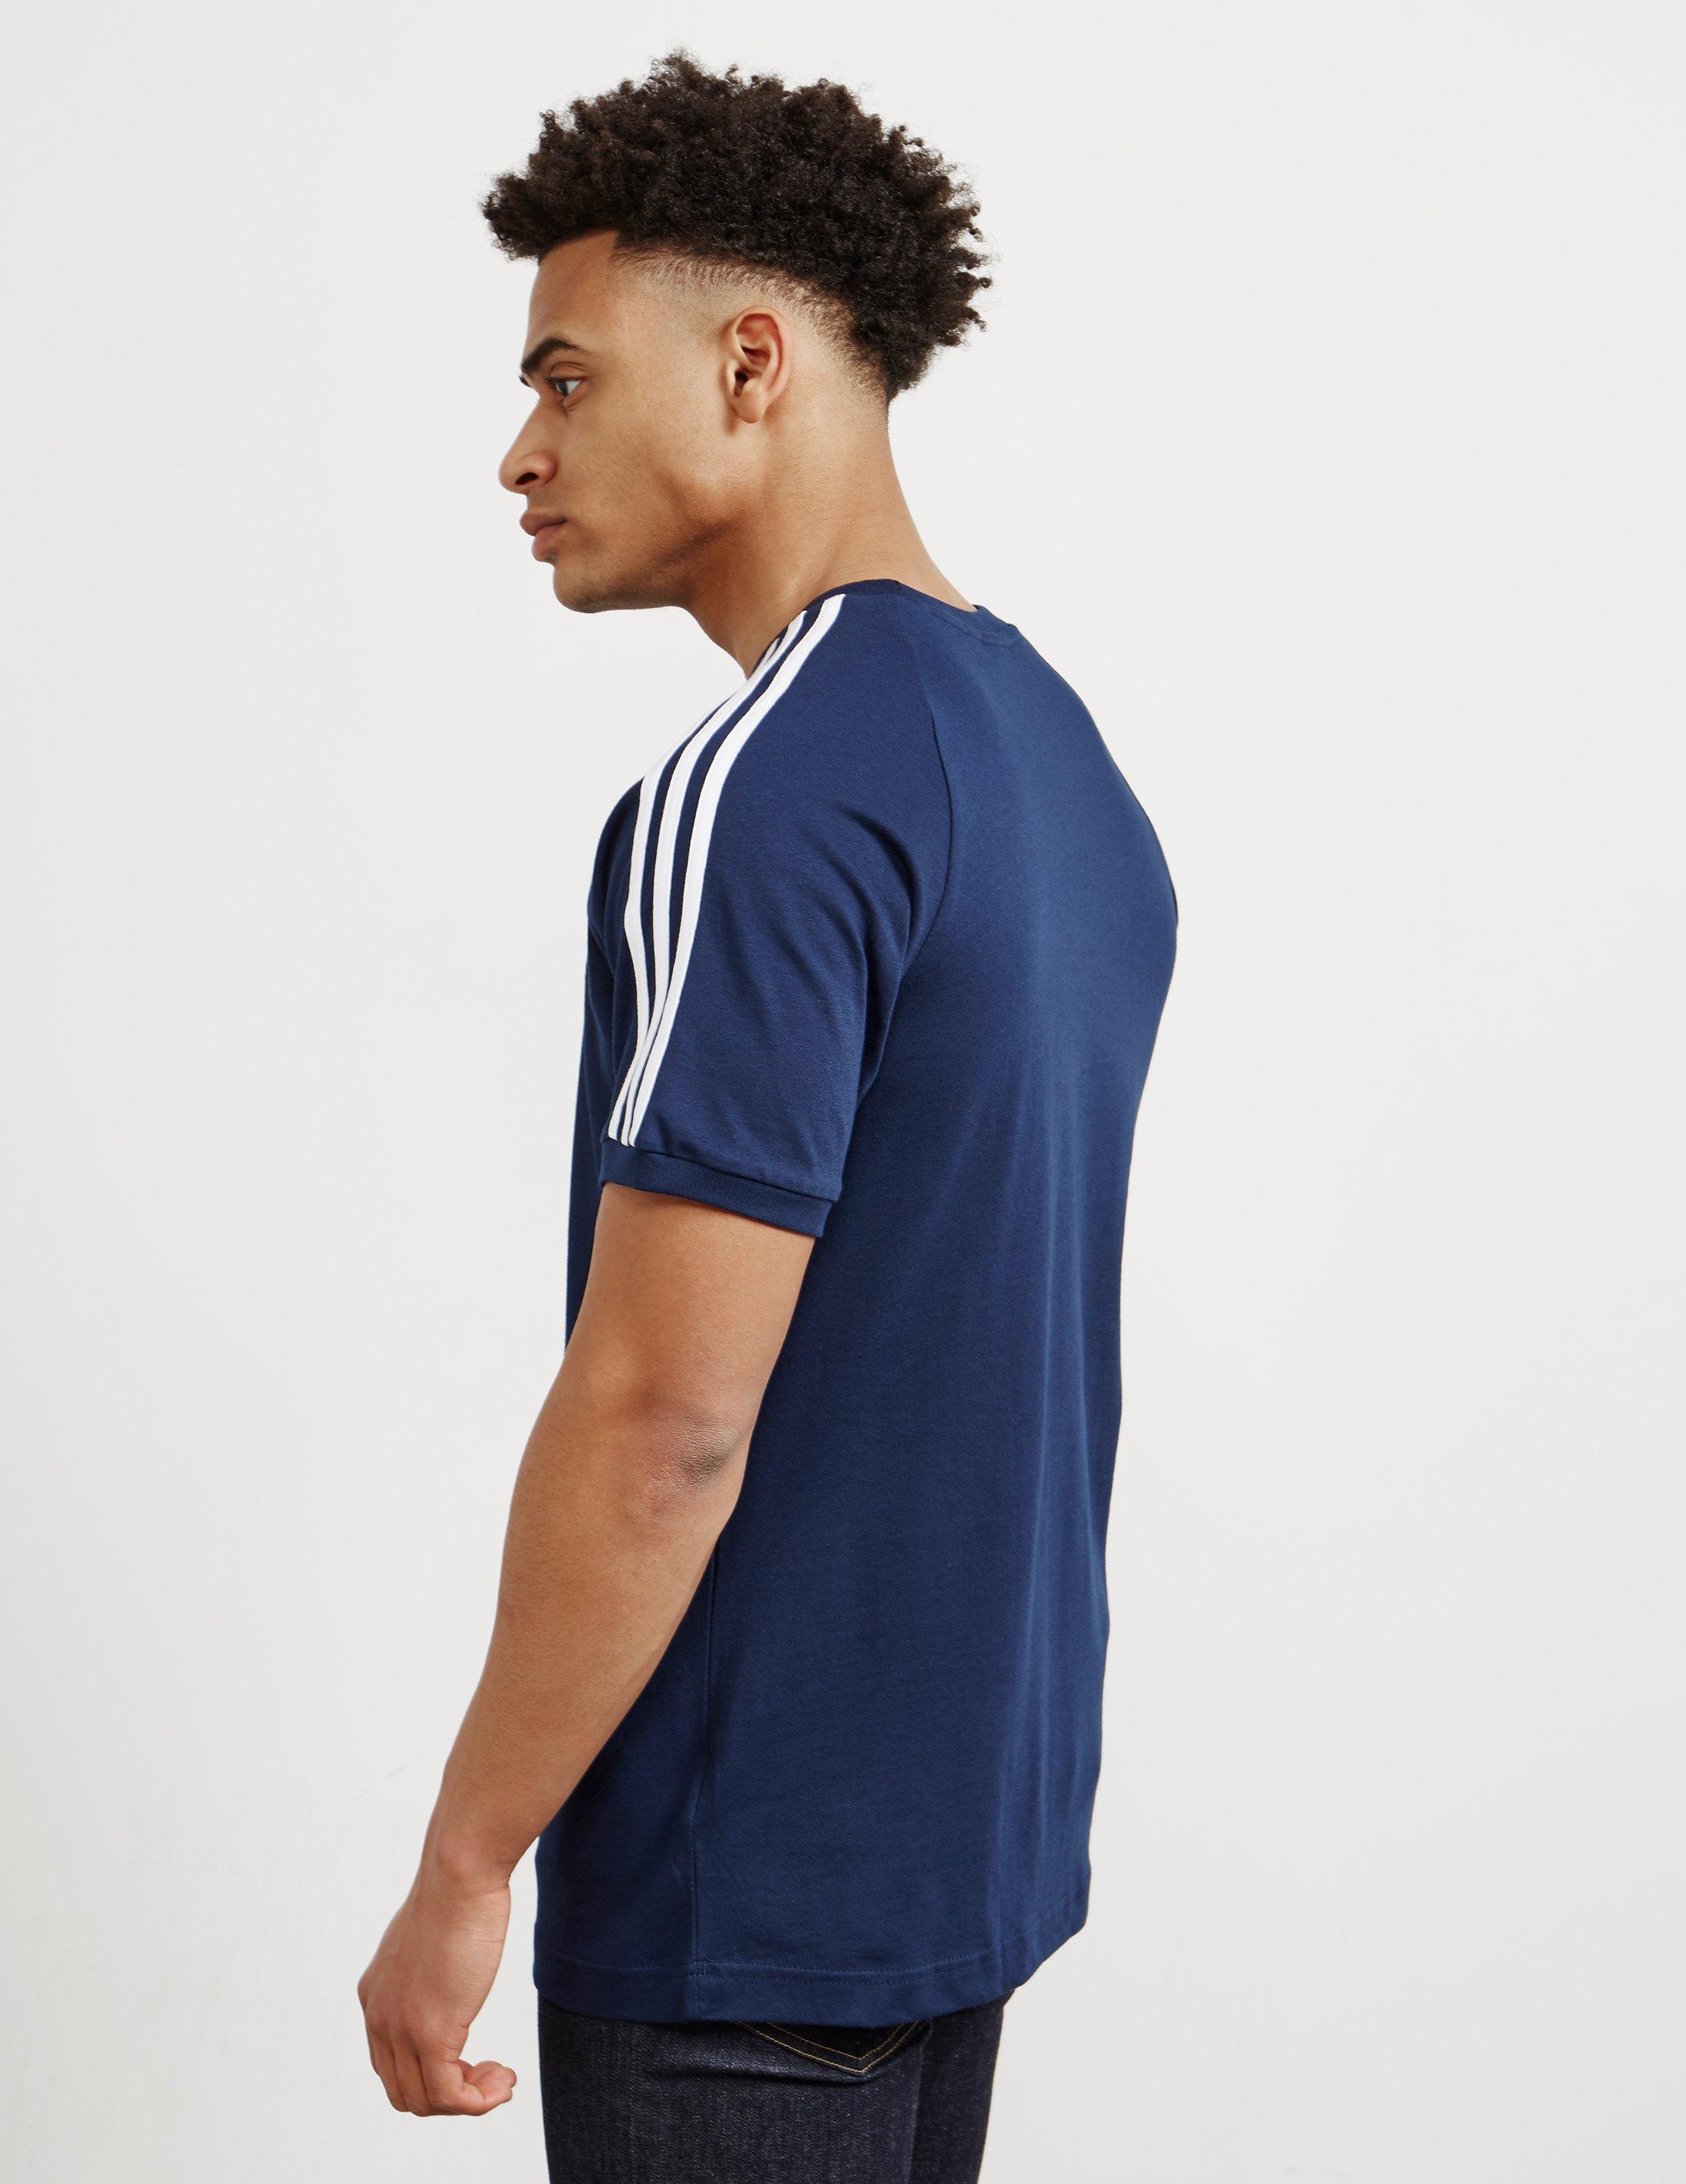 adidas Originals California Raglan Sleeve T-shirt Navy Blue for Men | Lyst